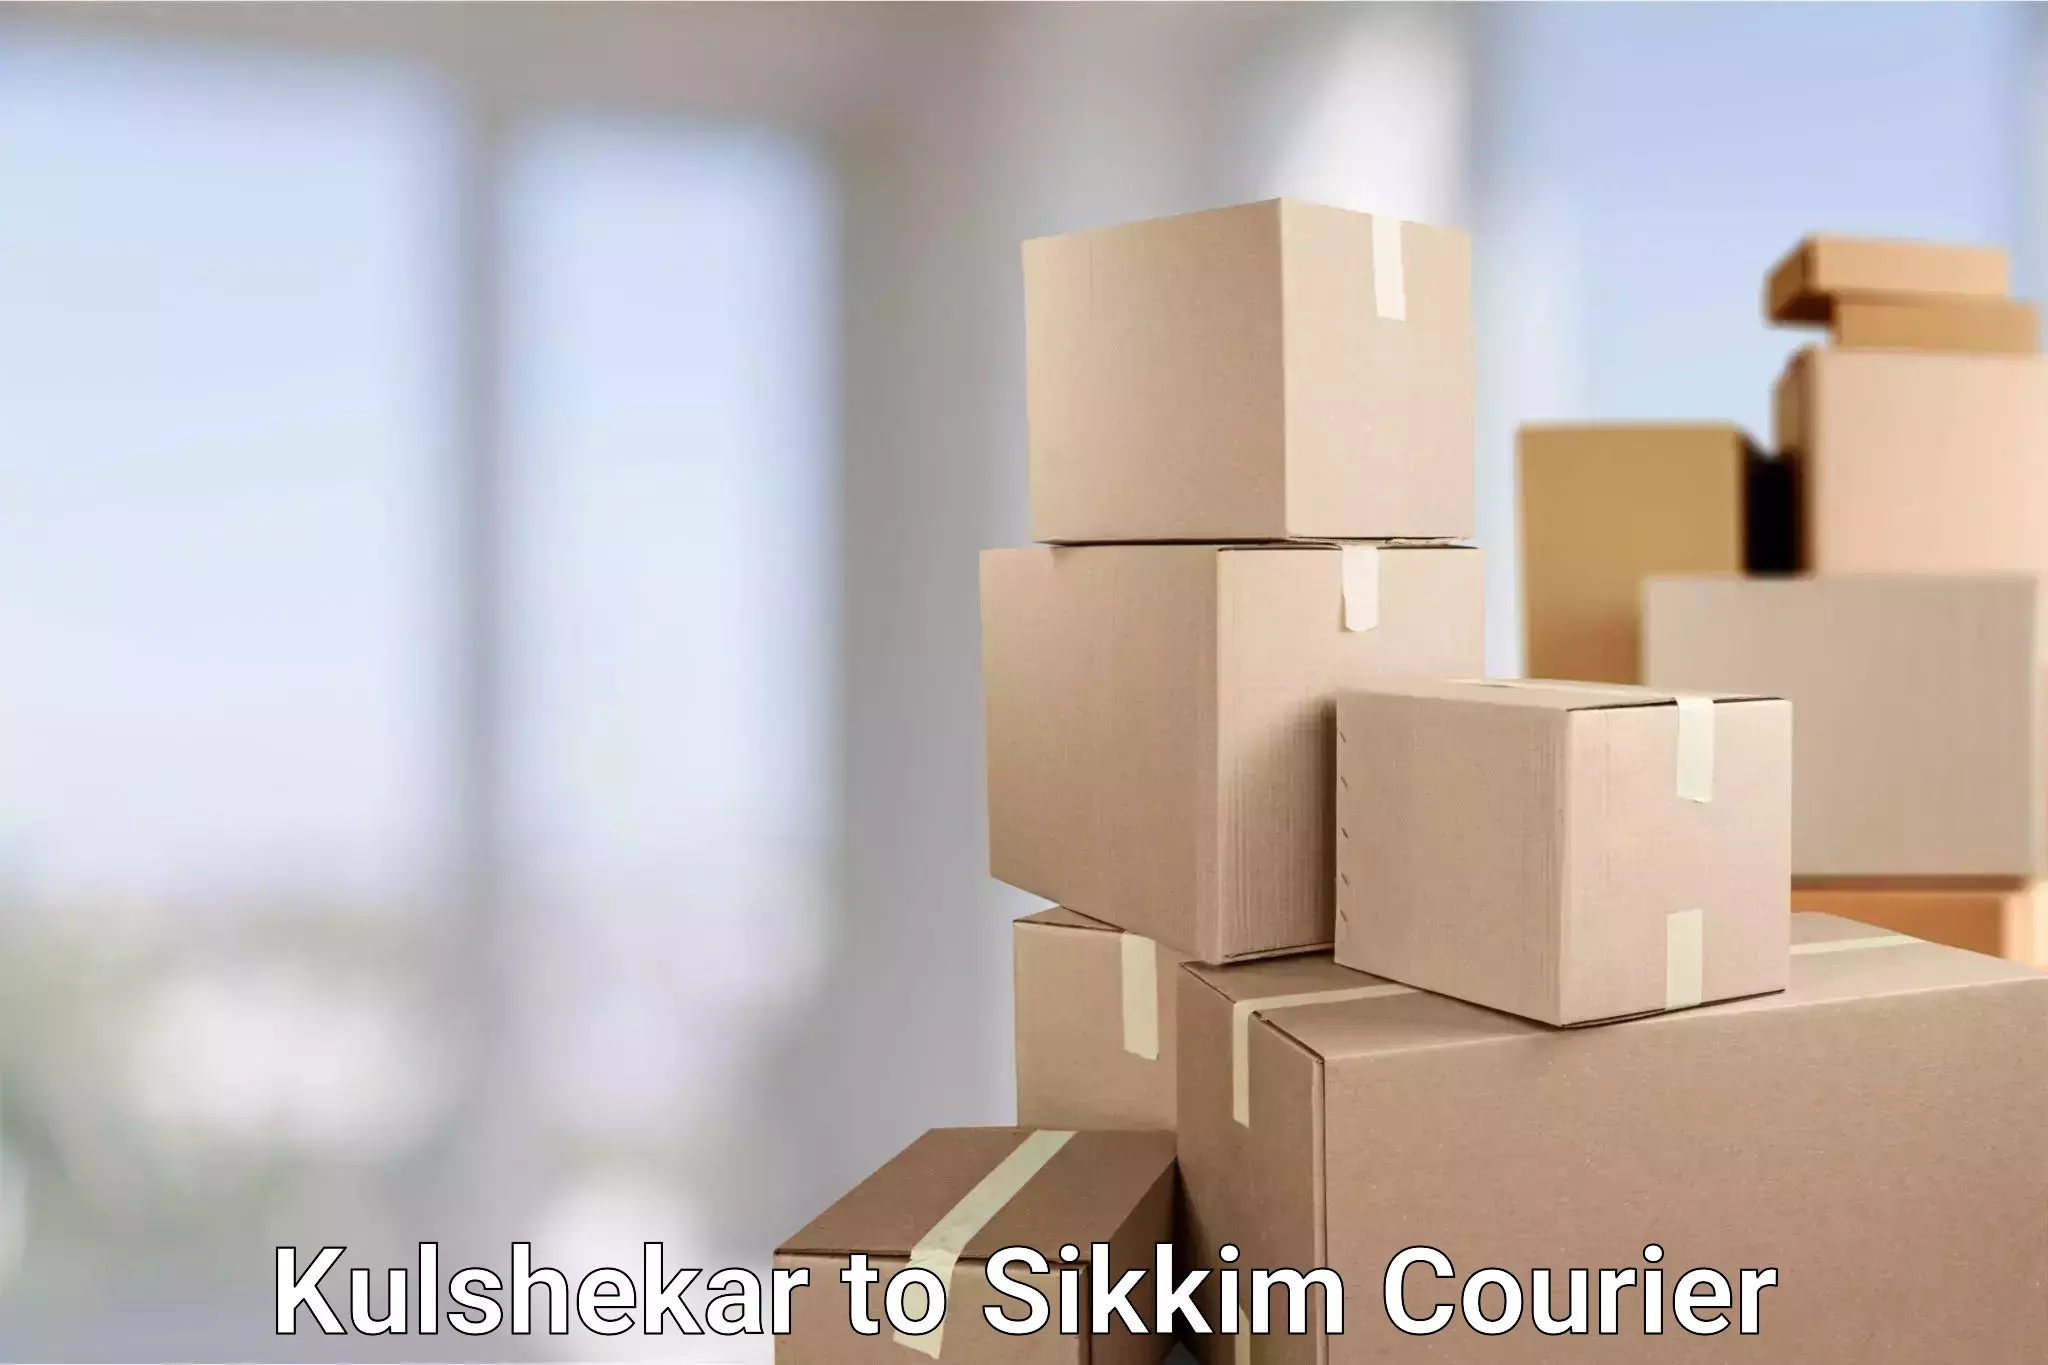 Discounted shipping Kulshekar to Sikkim